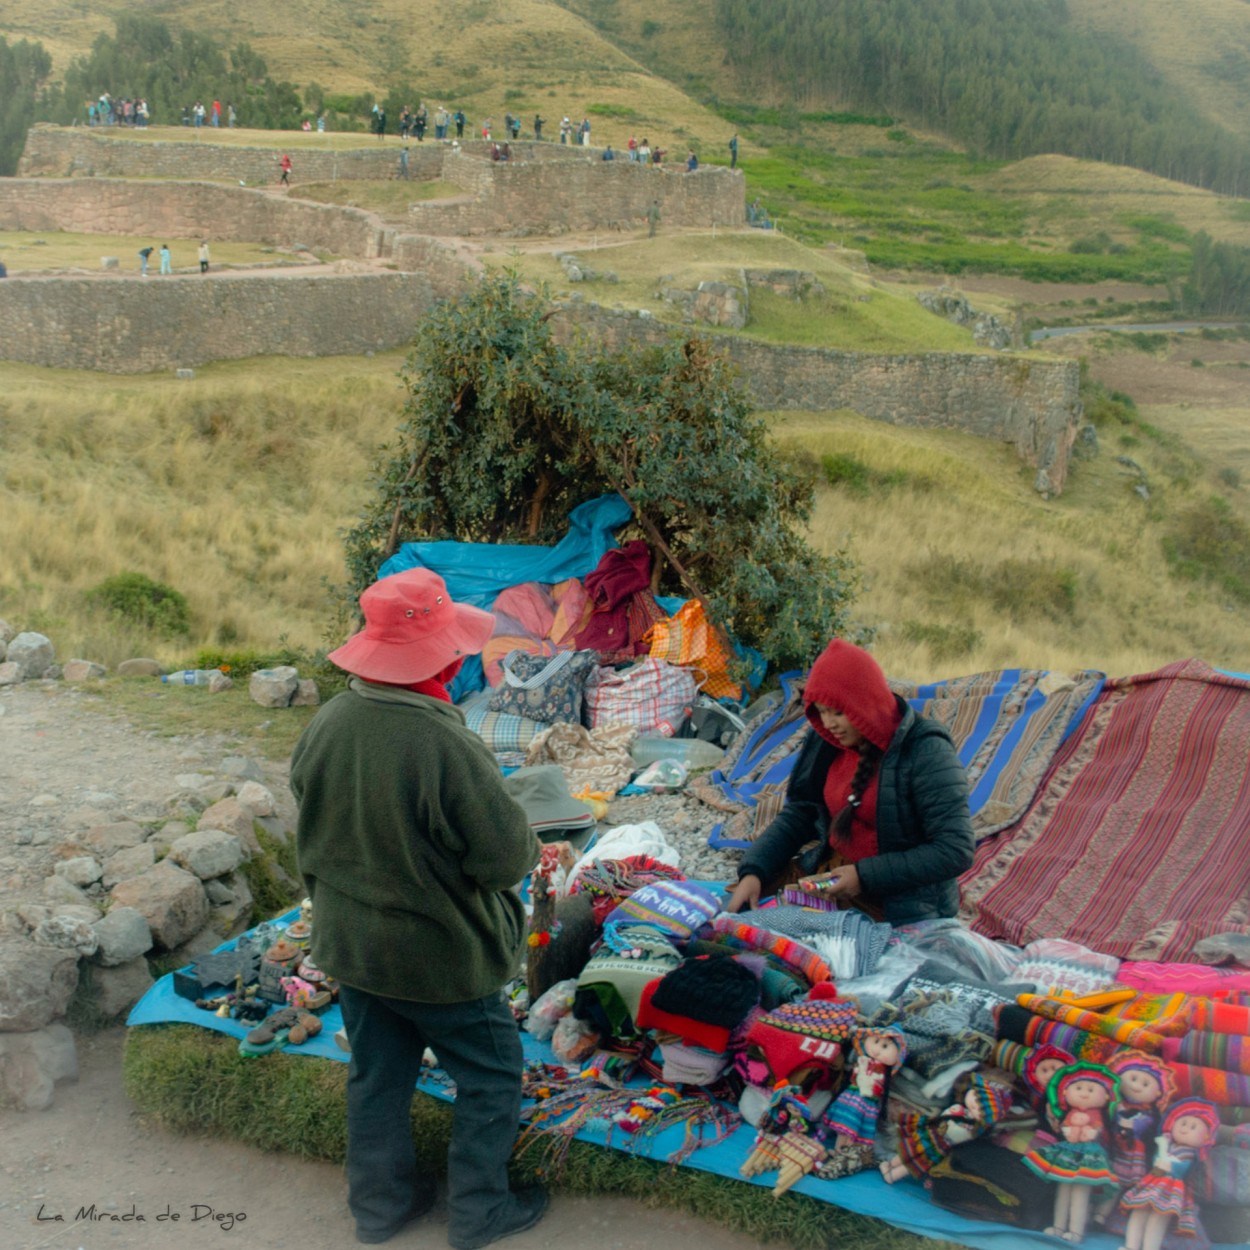 "Alrededores de Cusco." de Diego Pacheco